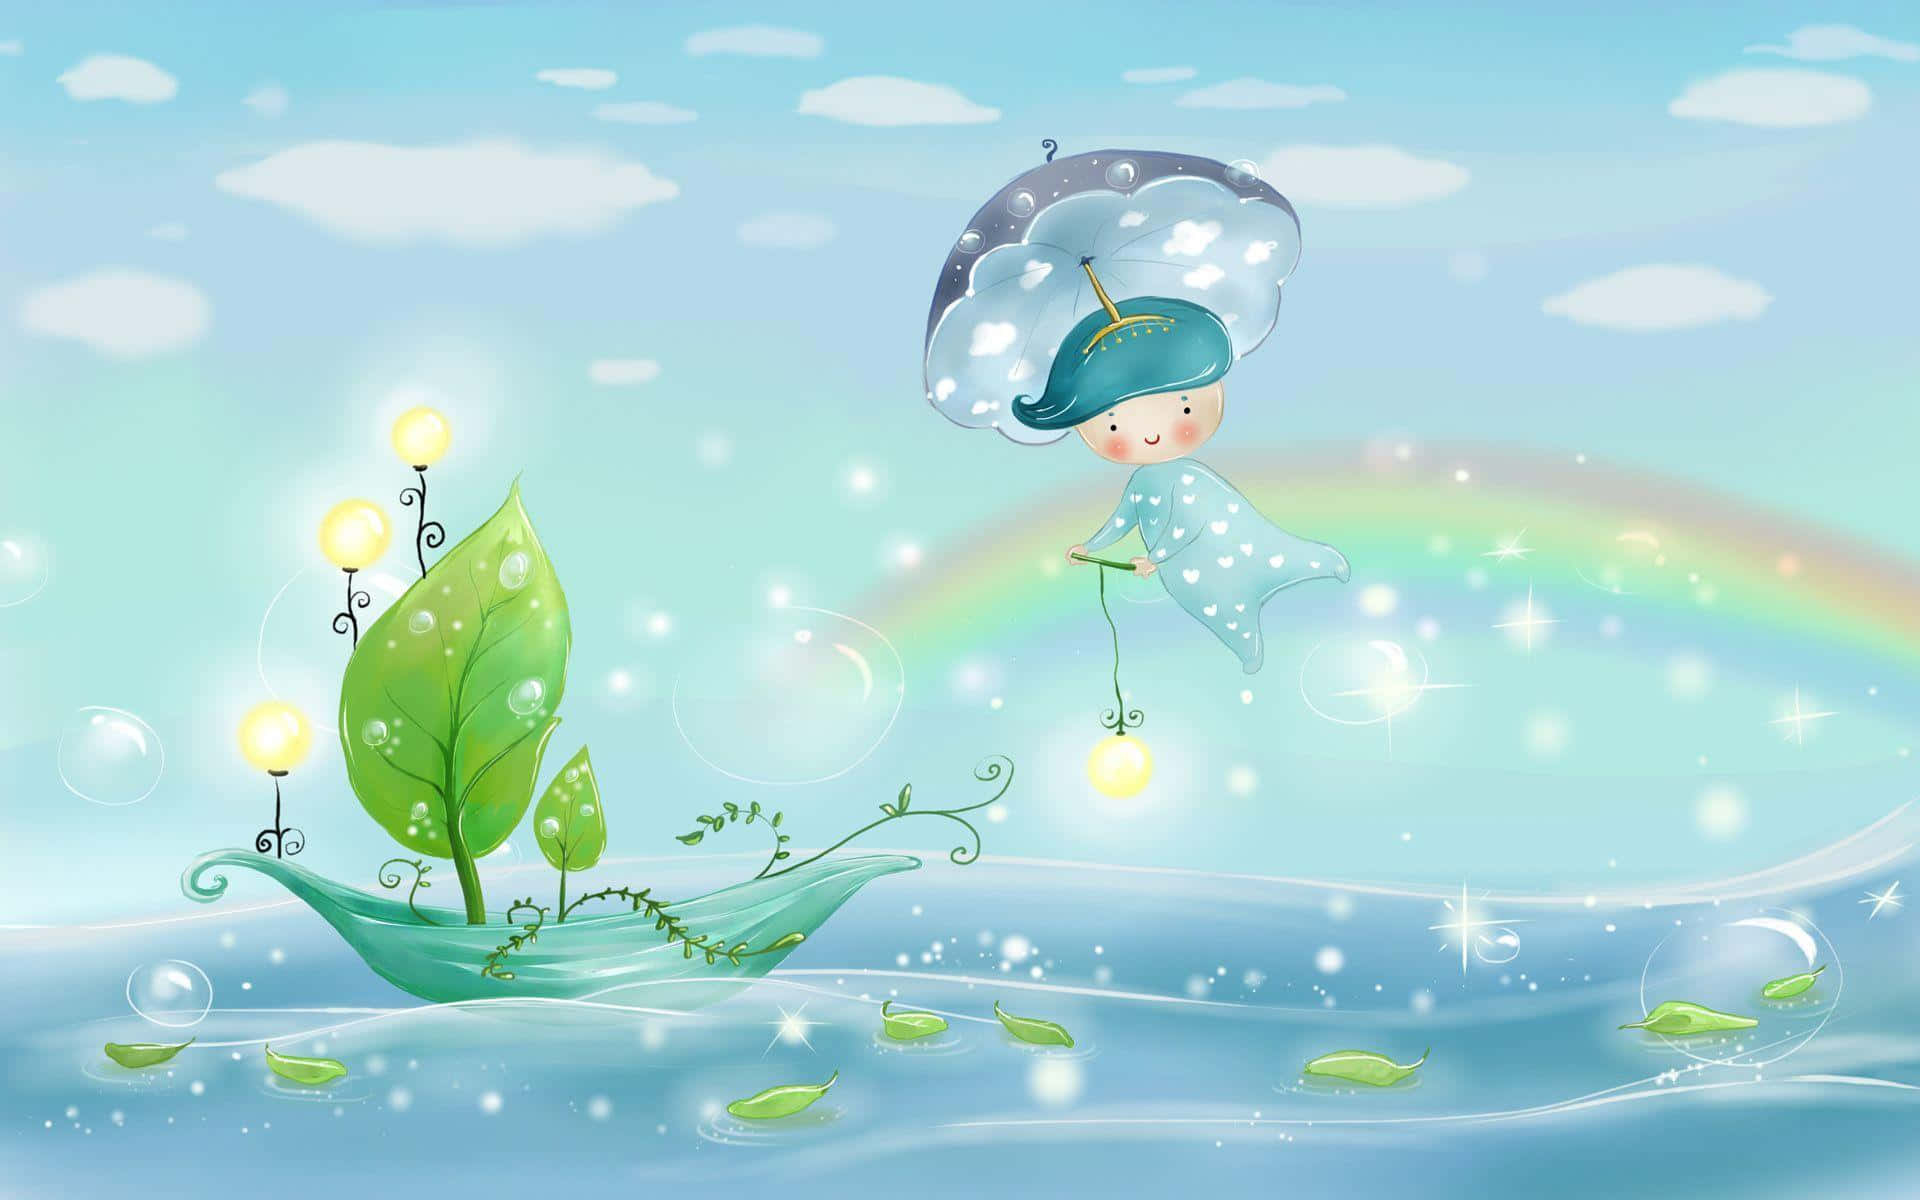 En lille pige flyder i vandet med et paraply